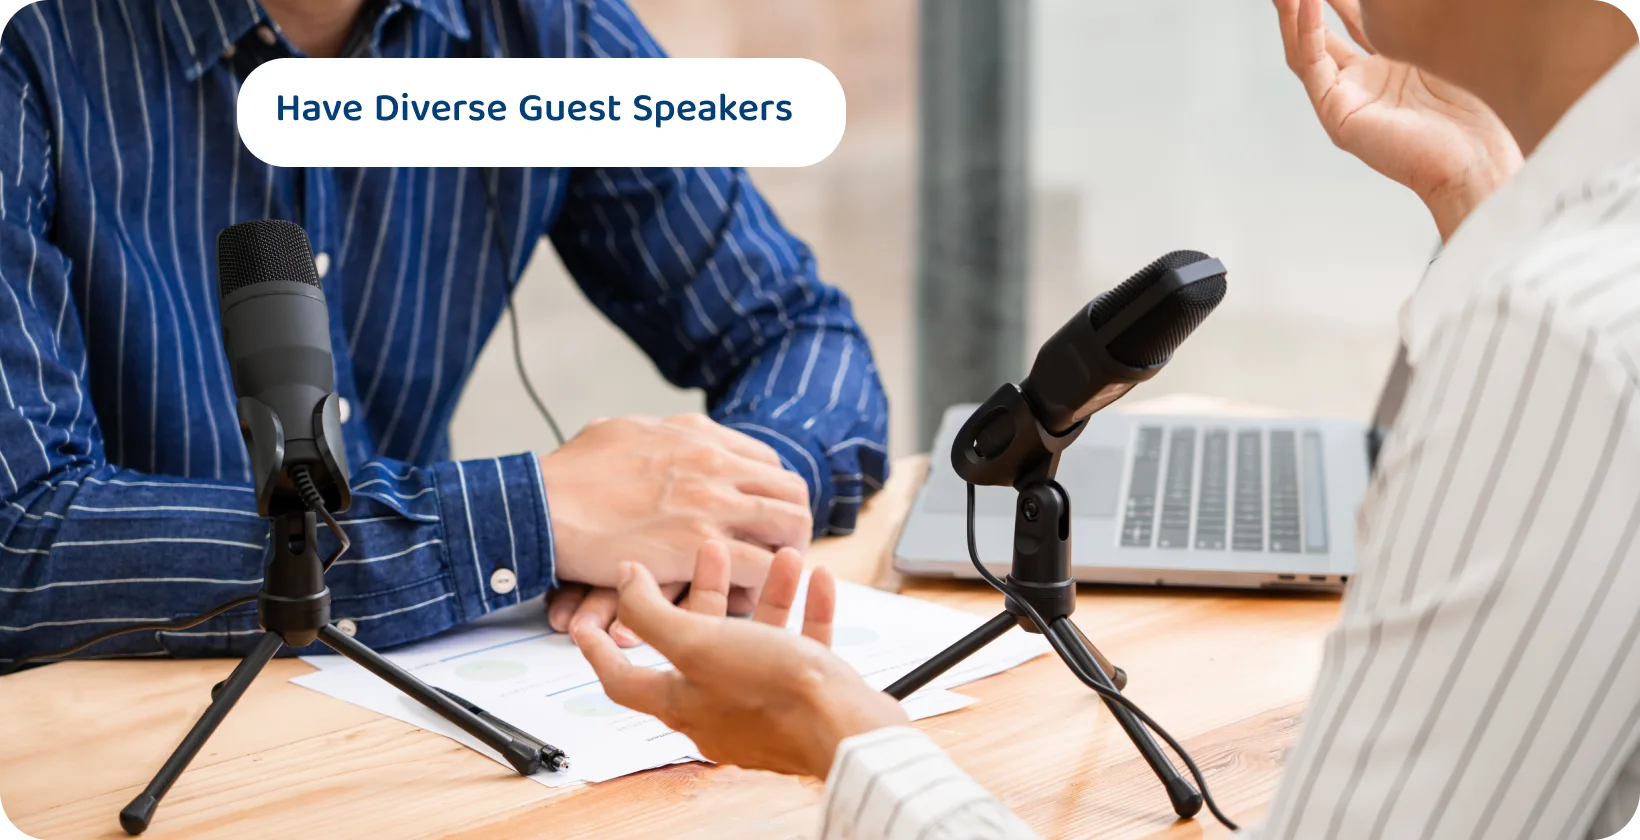 Két podcaster mikrofonnal beszélgetve lehet a tartalmi tippek a vonzó és változatos vendégelőadók számára.